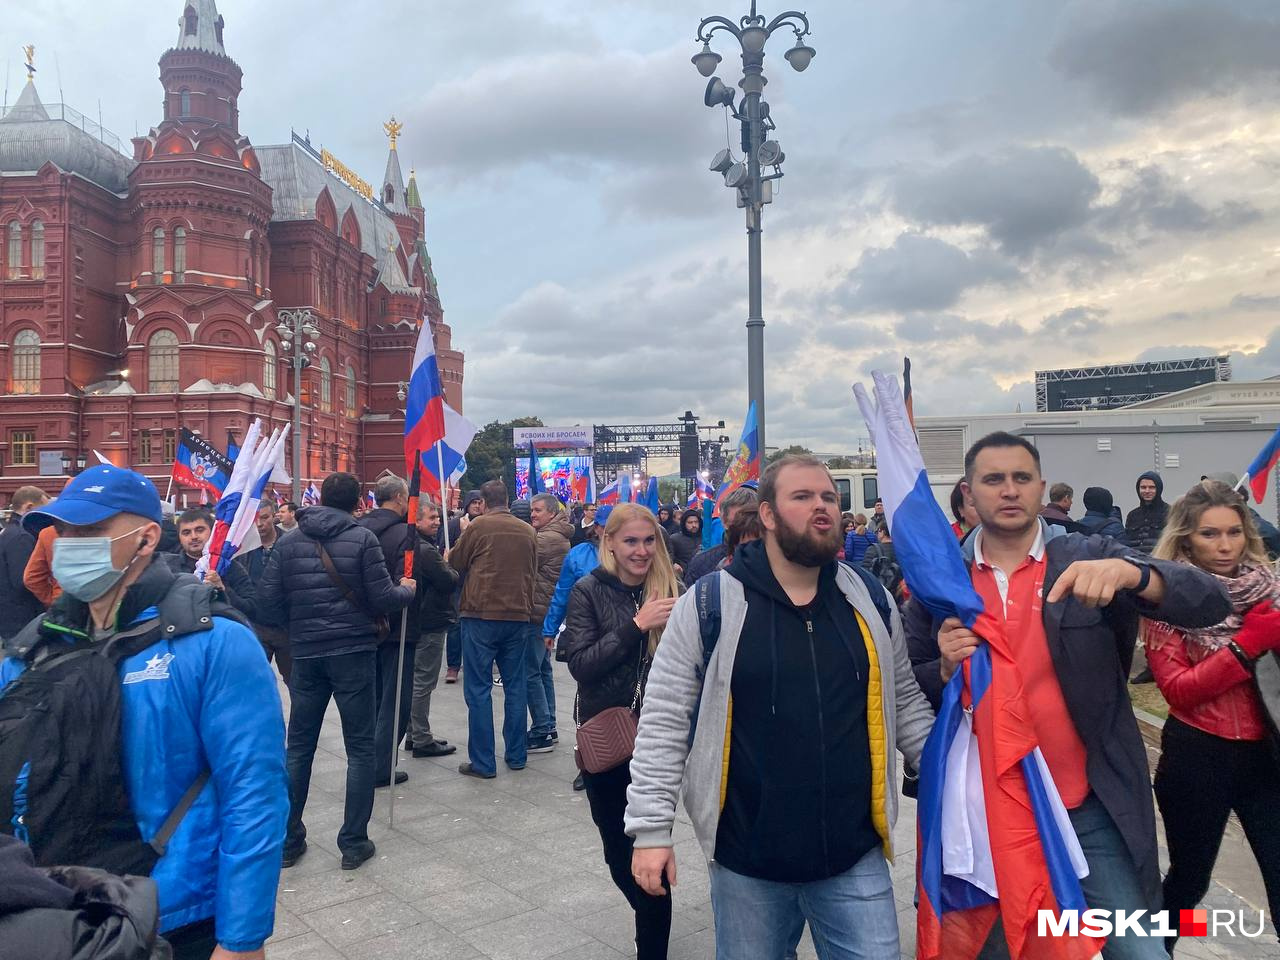 Митинг в москве 1. Митинг на Манежной. Митинг в центре Москвы. Фото людей в Москве. Митинги в Москве сейчас.